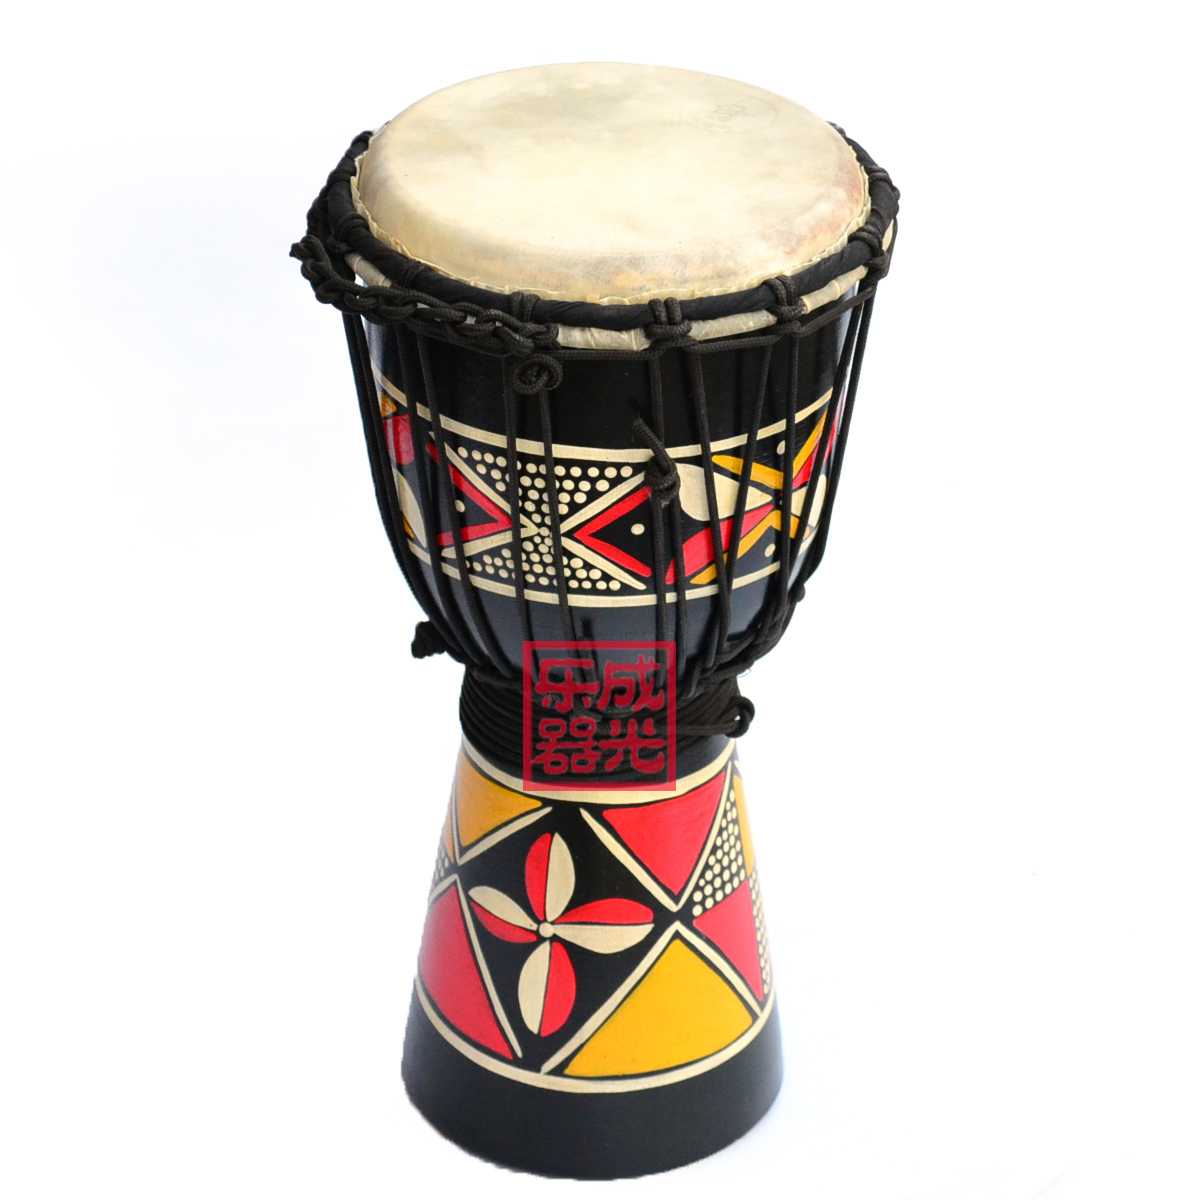 Африканские барабаны